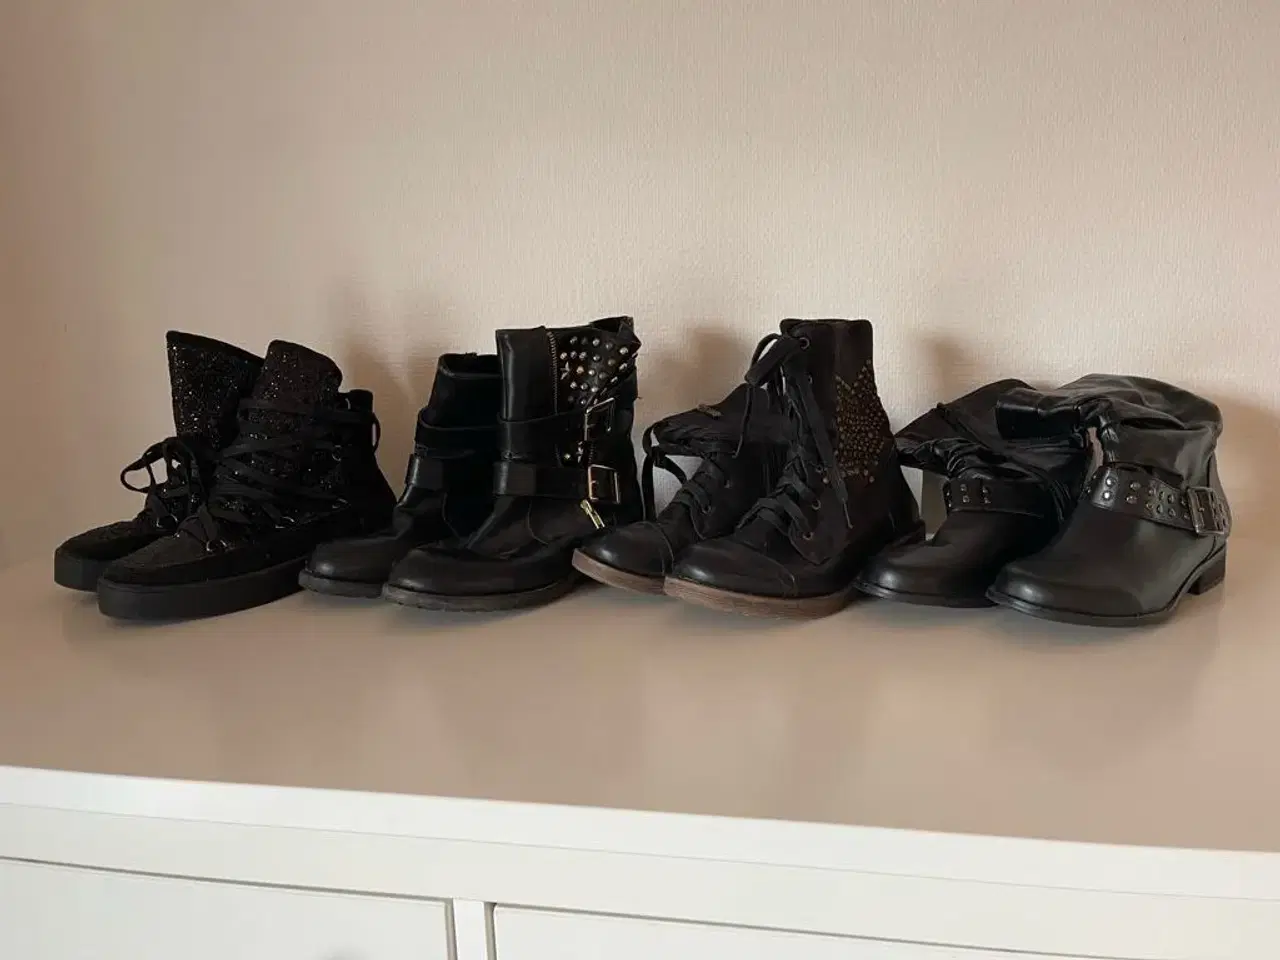 Billede 1 - Fire forskellige sorte gode støvler